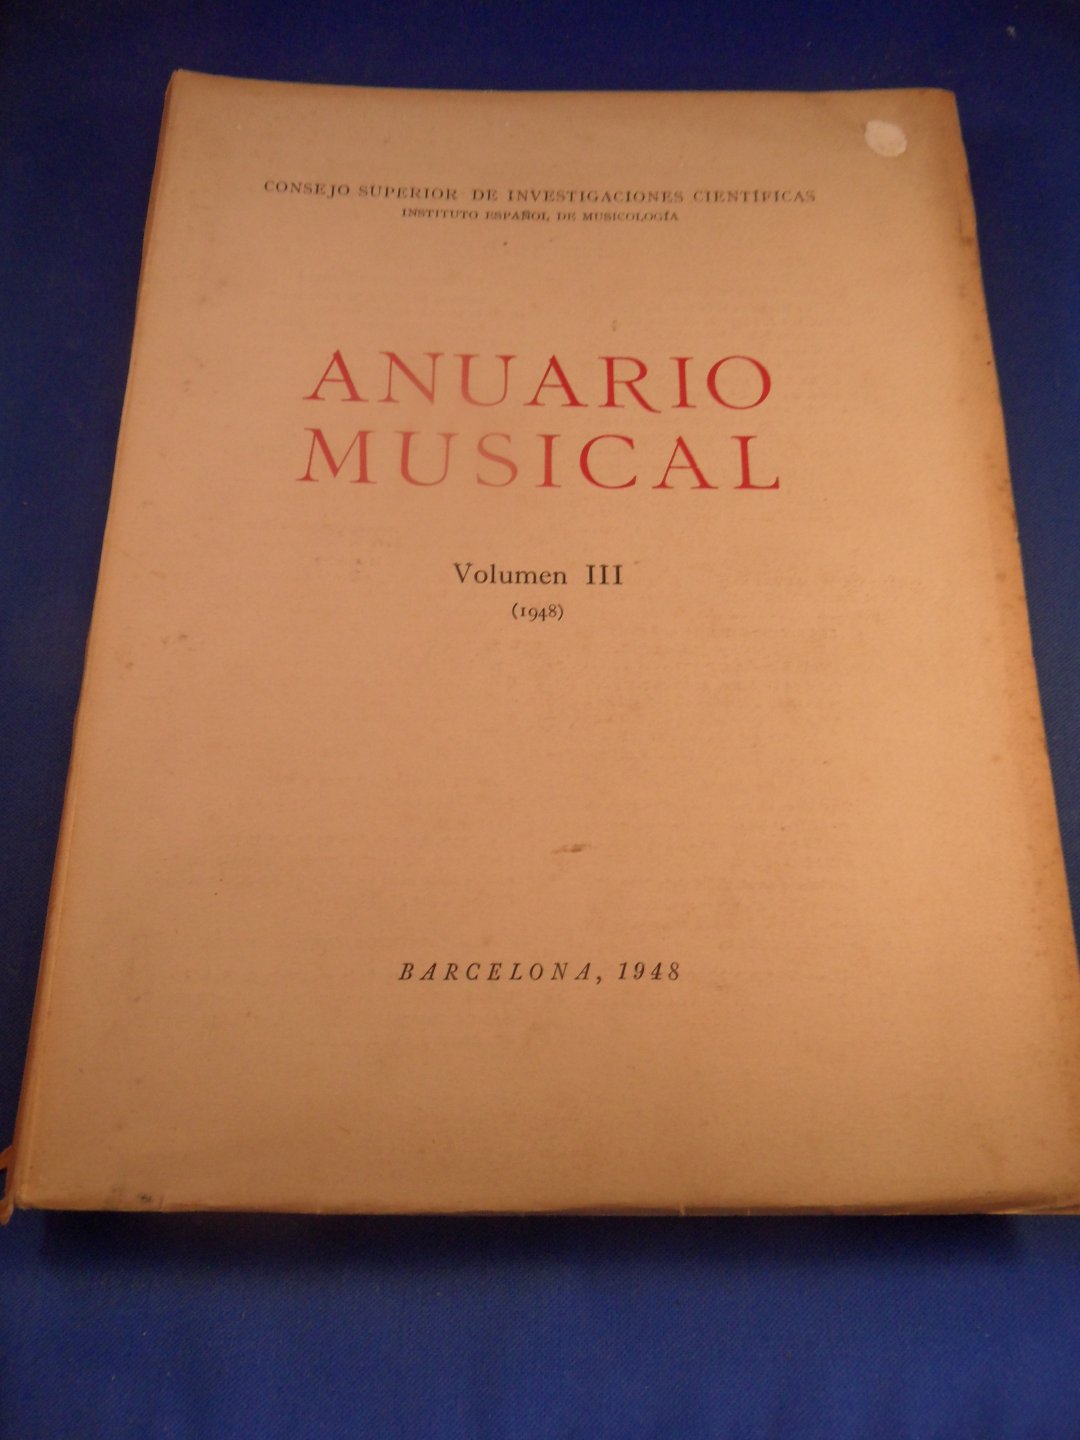 C.S.I.C. Instituto Espanol de Musicologia - Anuario Musical. 1948, vol III